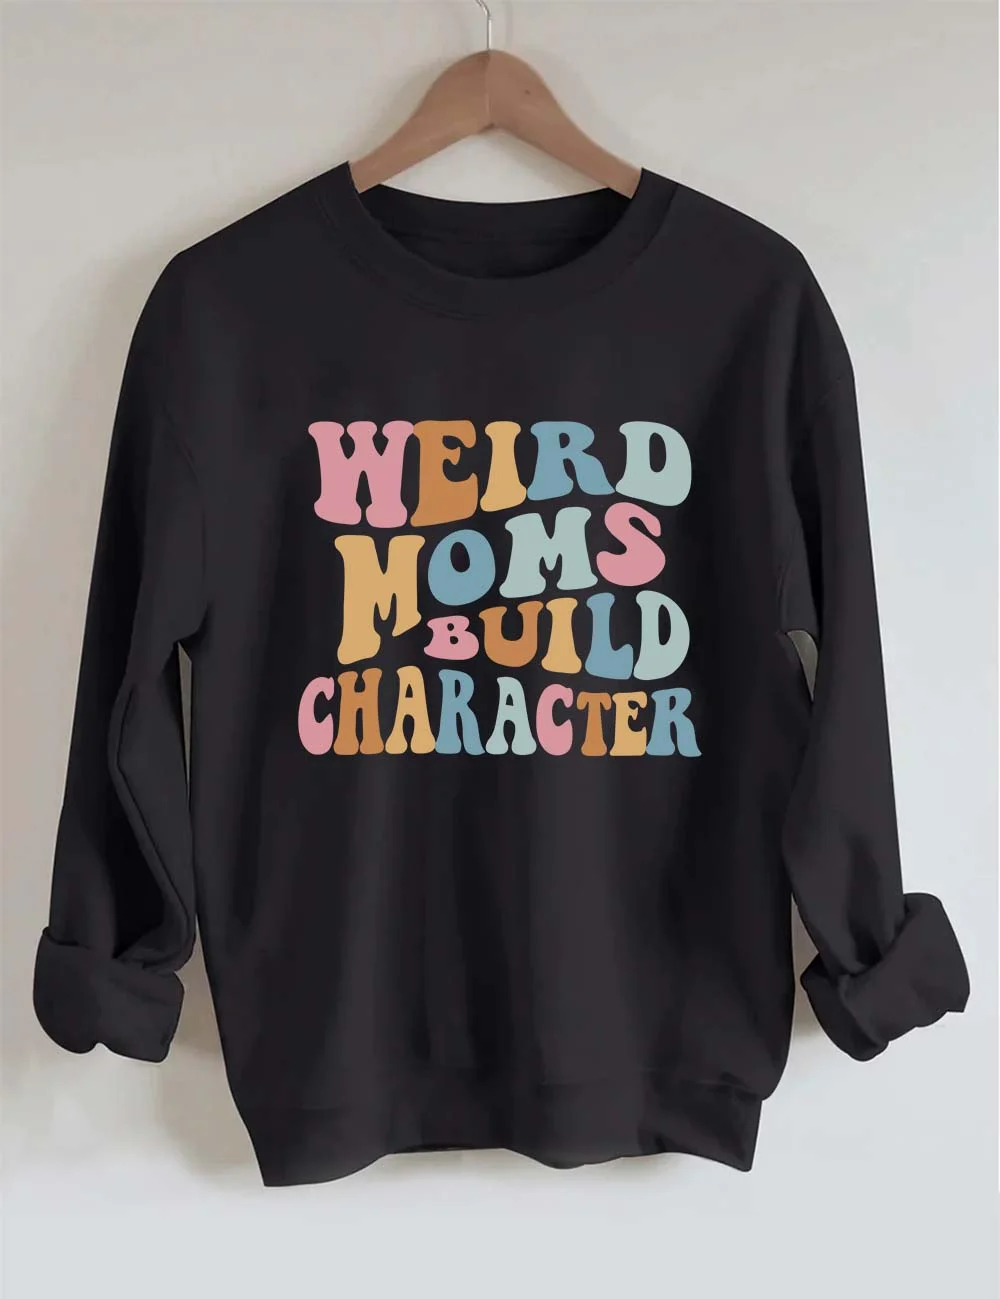 Weird Moms Build Character Sweatshirt